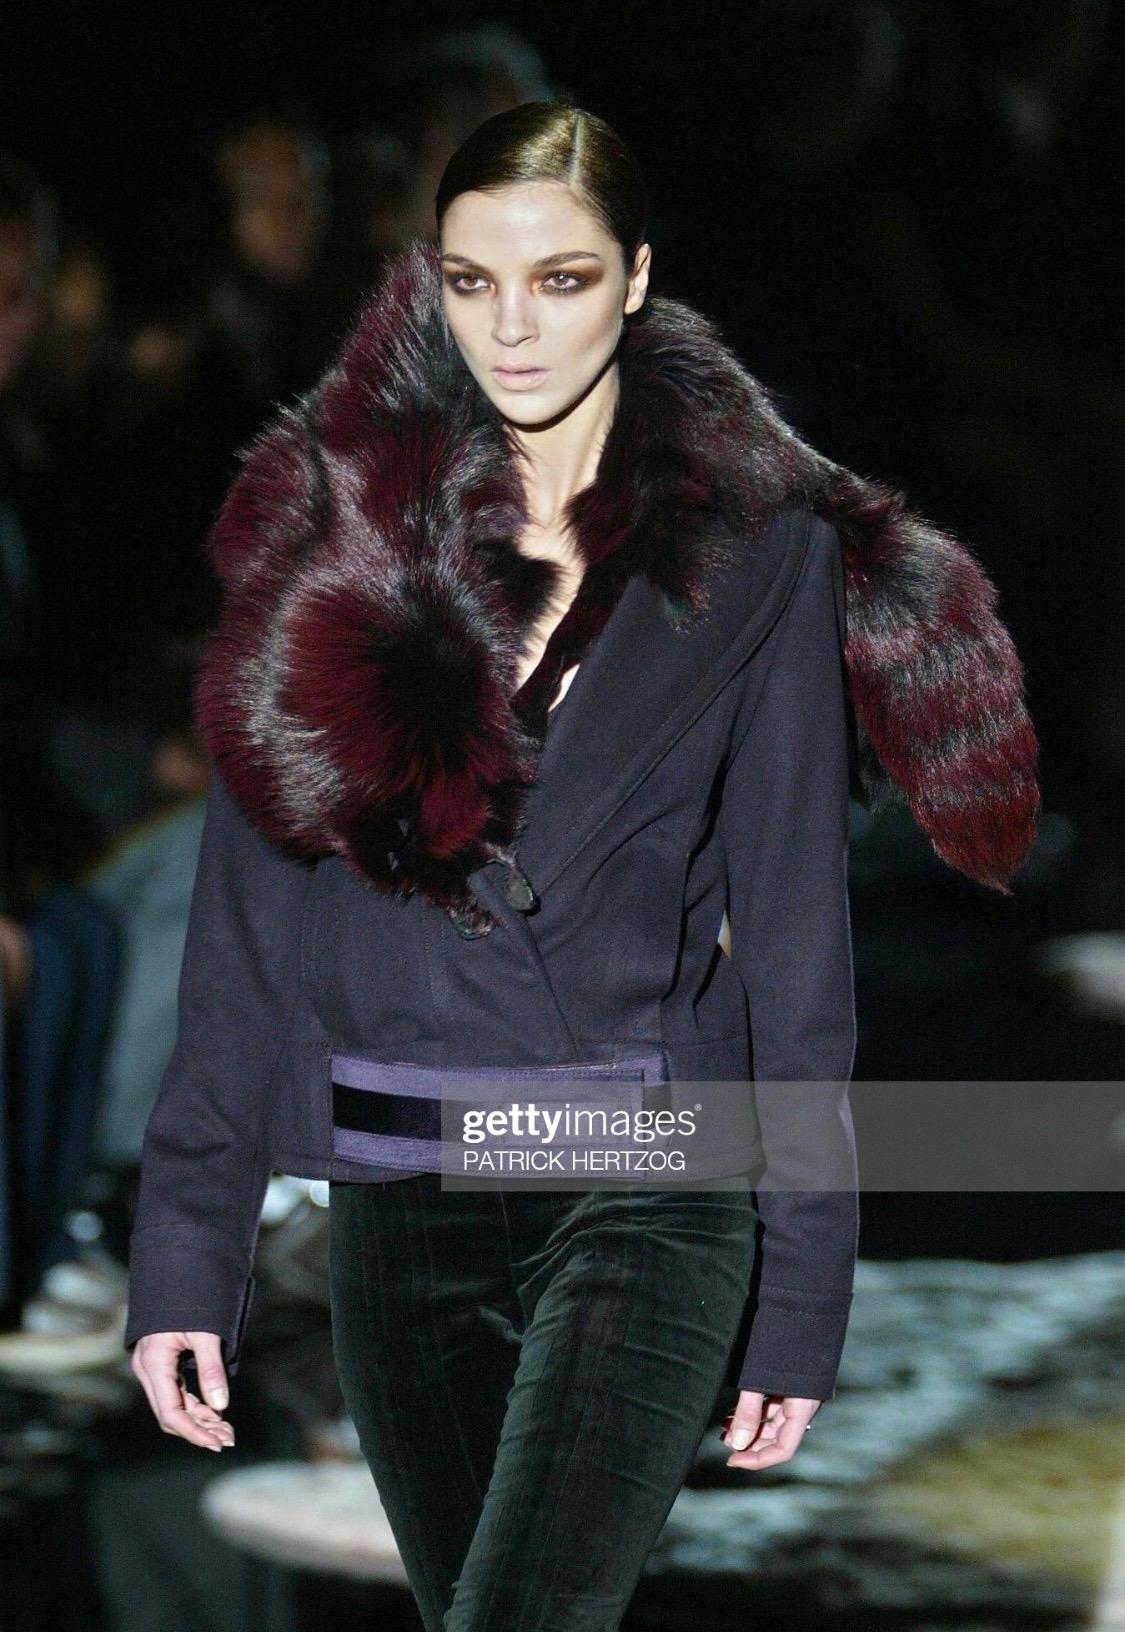 Présentation d'une superbe veste Gucci ornée de fourrure de renard violet, conçue par Tom Ford. Issue de la collection automne/hiver 2004, cette veste est l'une des dernières créations de Ford au sein de la maison de couture. Elle présente une